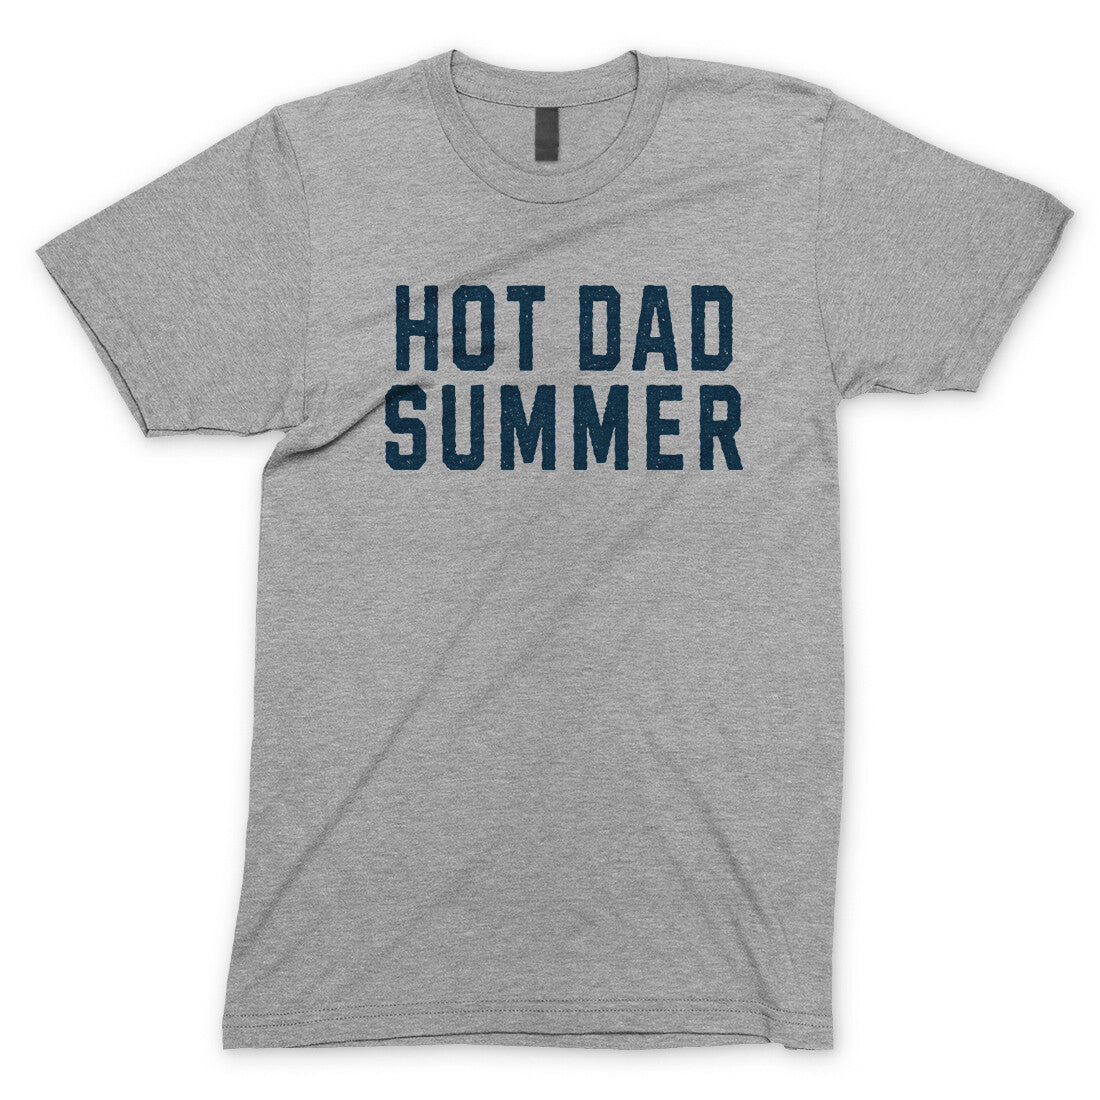 Hot Dad Summer in Sport Grey Color